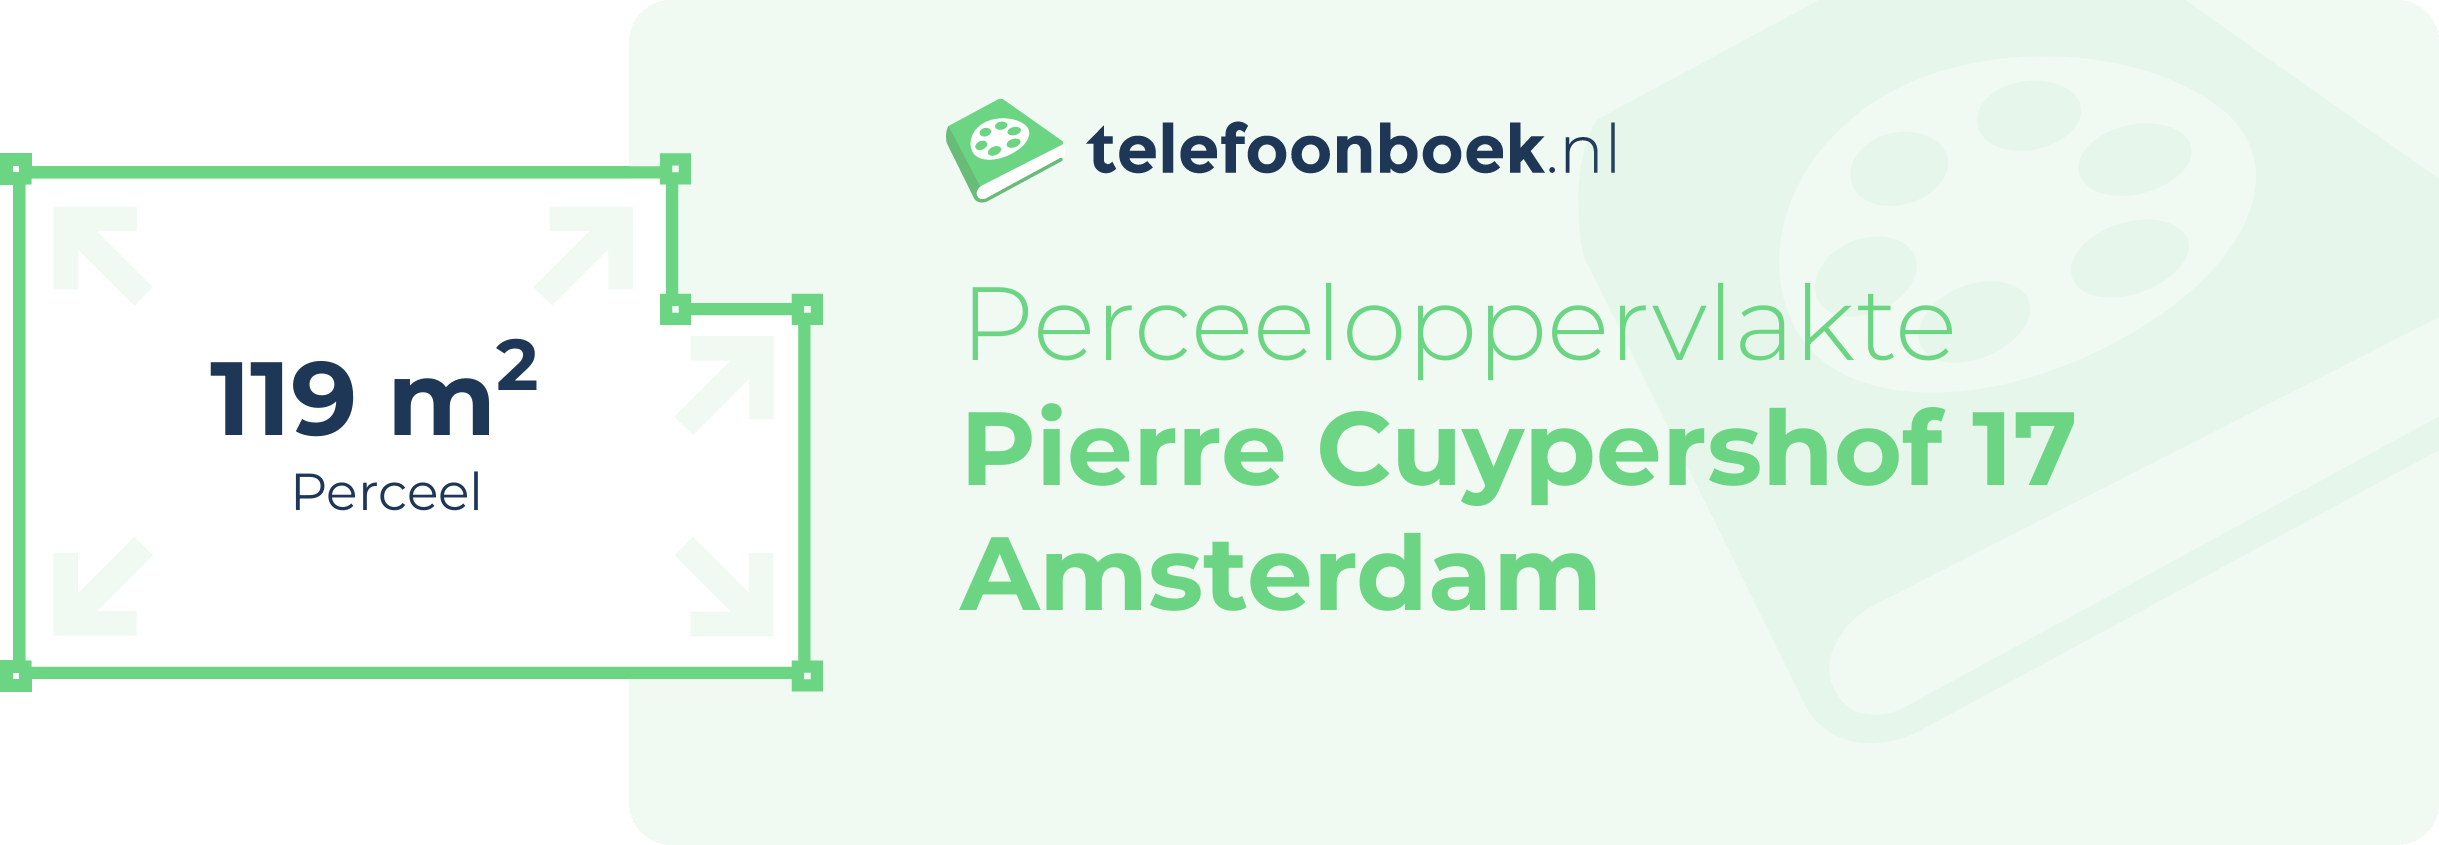 Perceeloppervlakte Pierre Cuypershof 17 Amsterdam